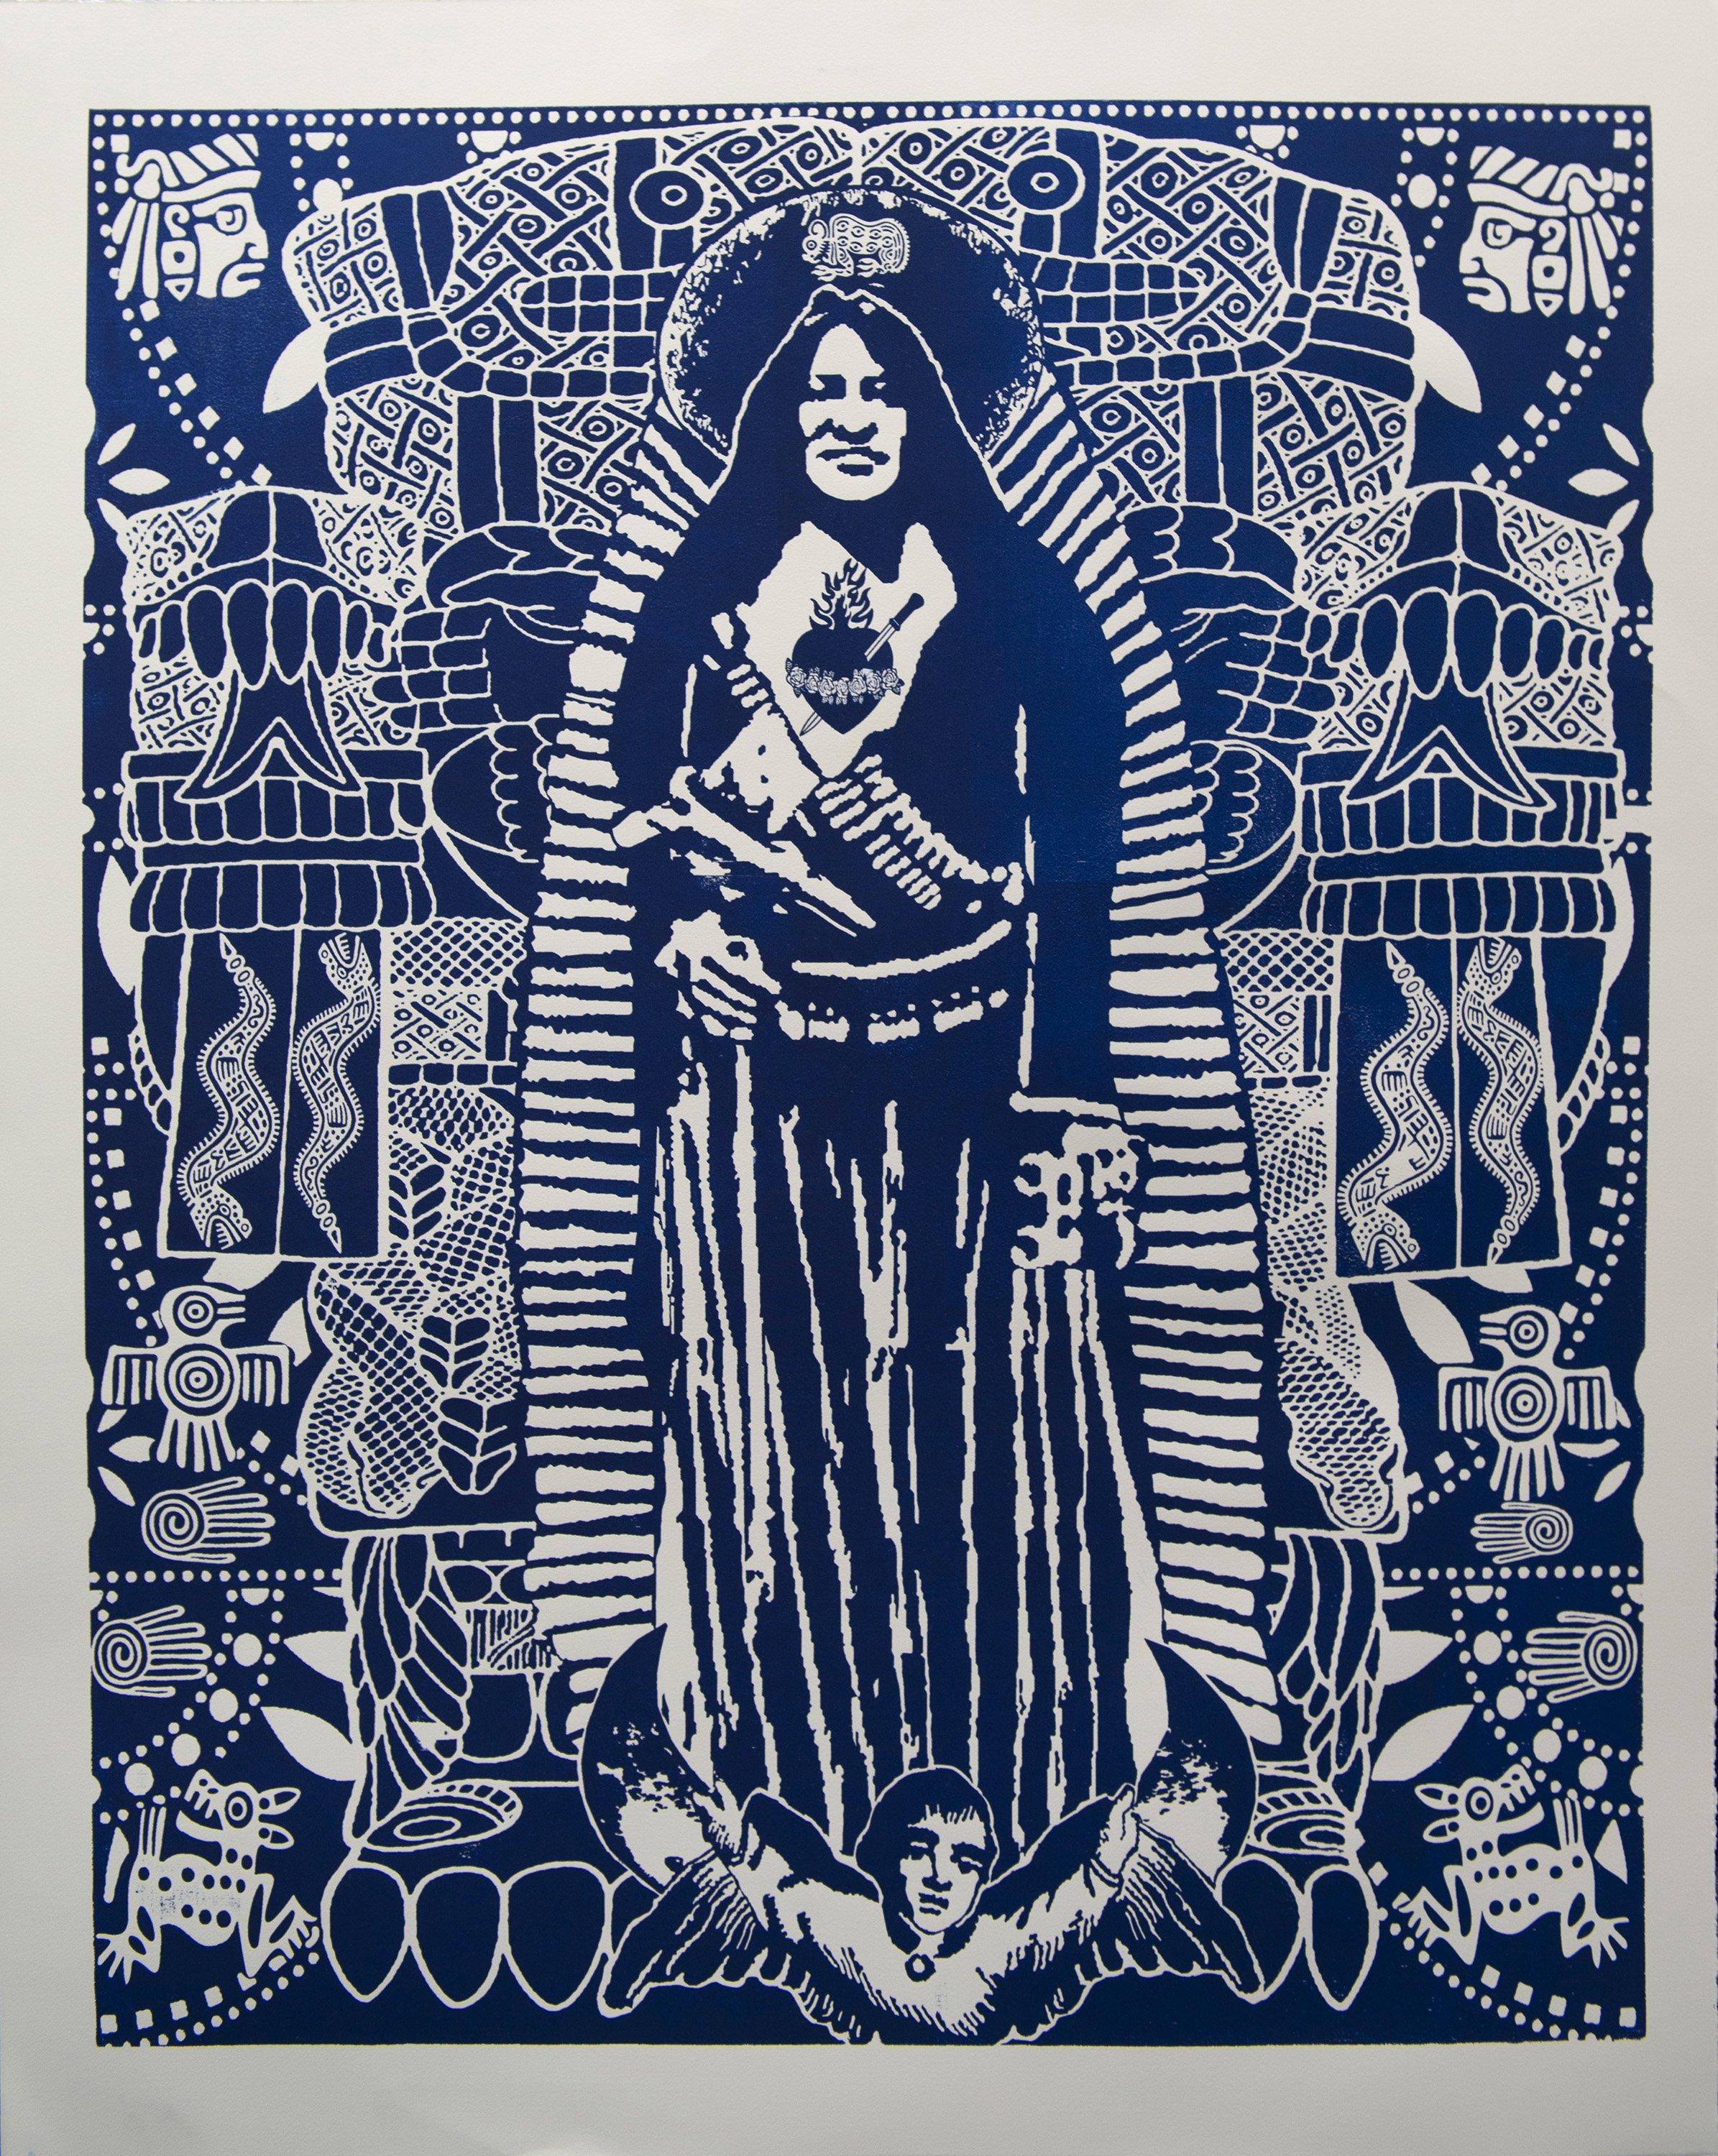 Nuestra Senora de la Malinche_relief print on white paper_Ortega.jpg